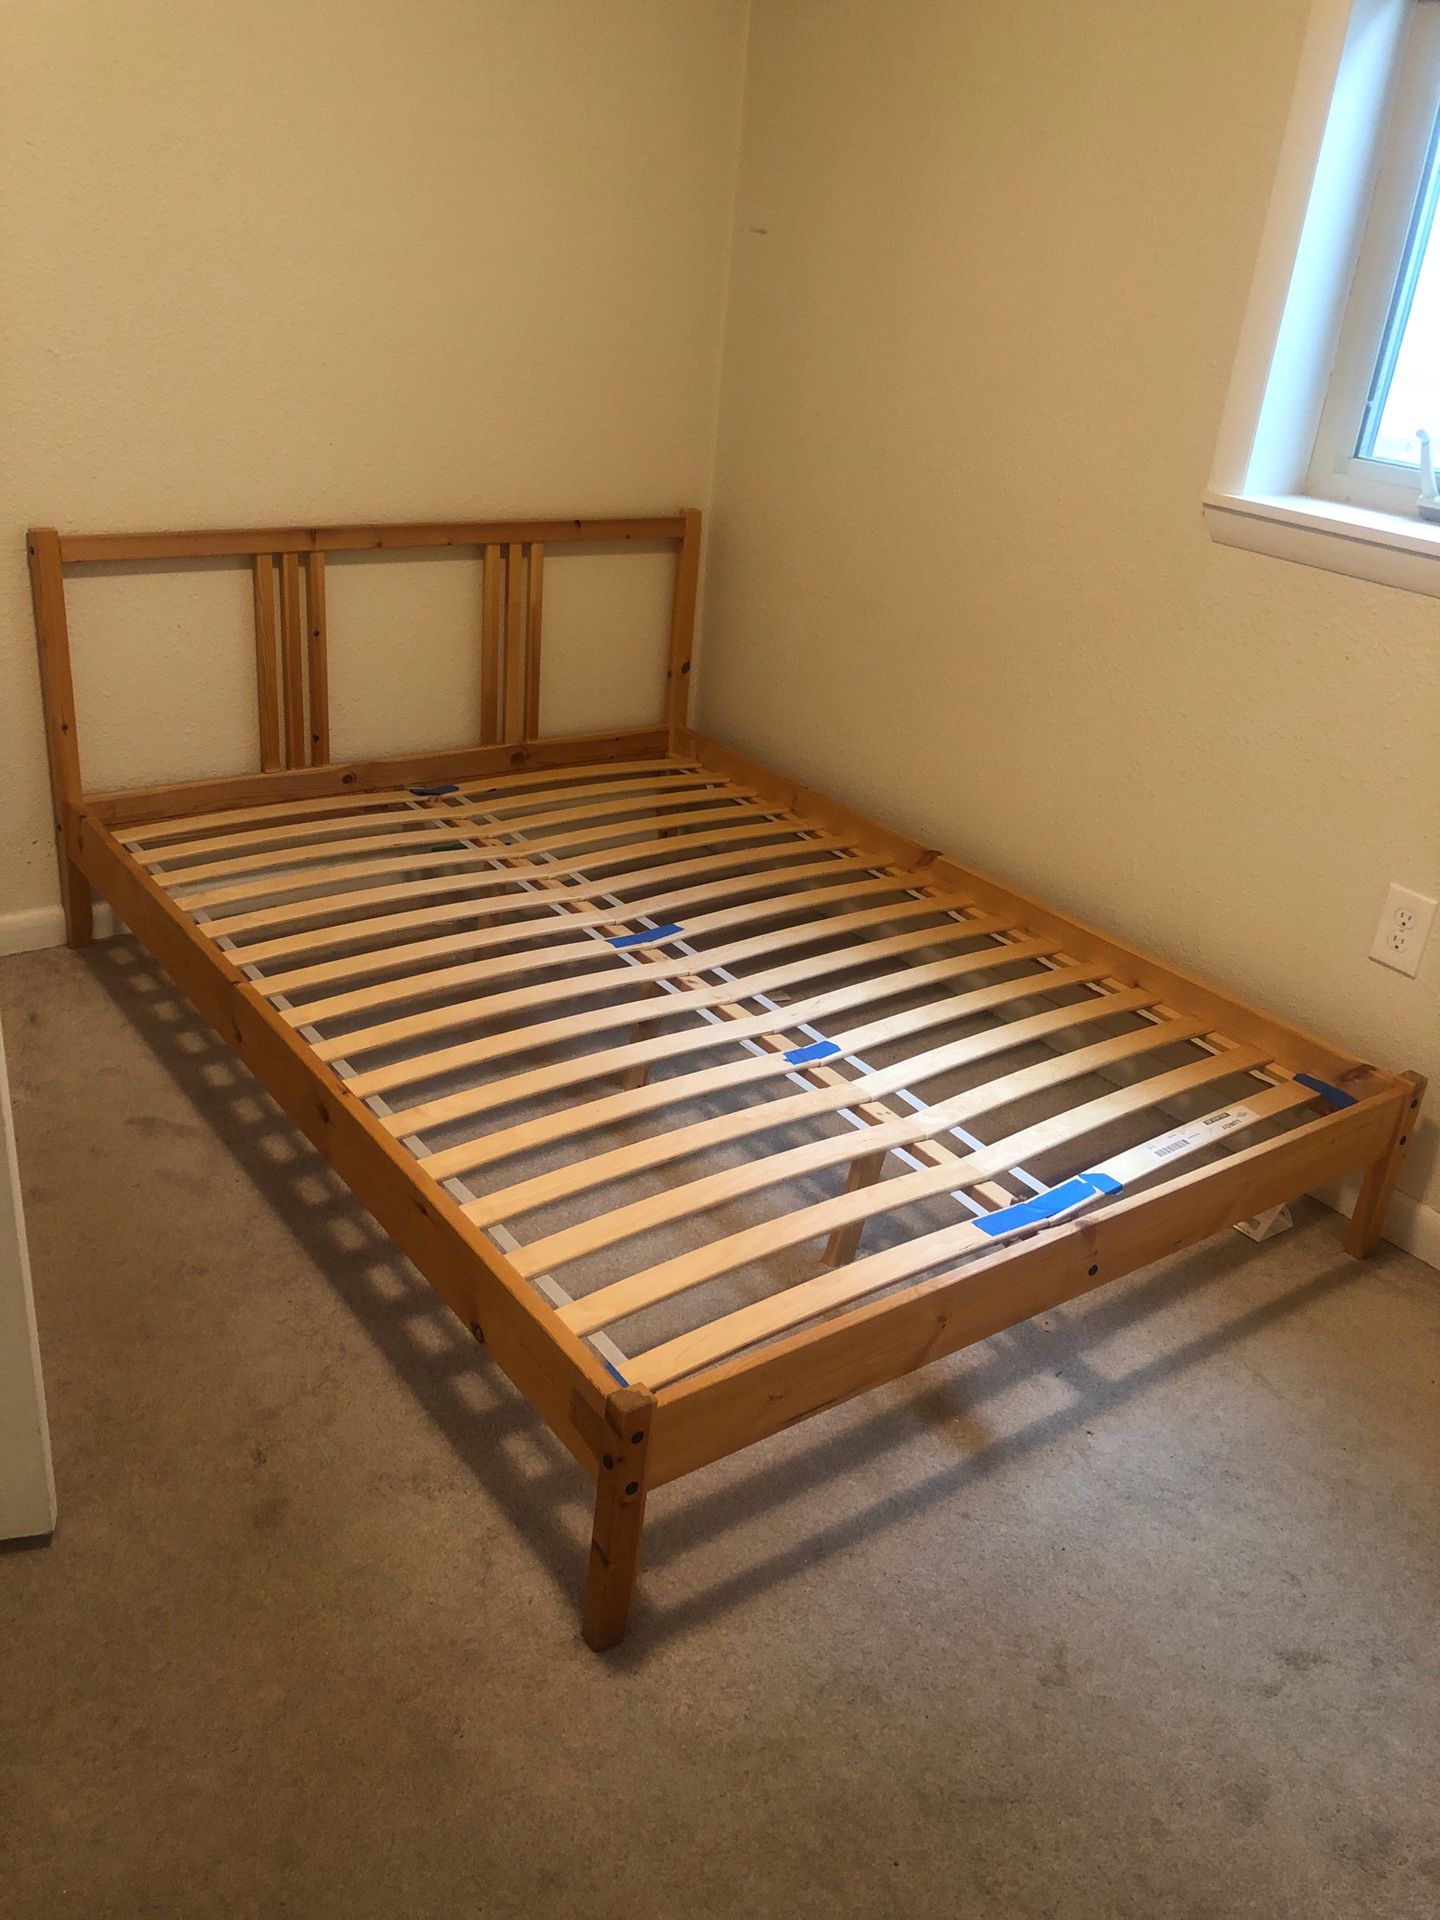 IKEA full size mattress, Bedframe, and box set